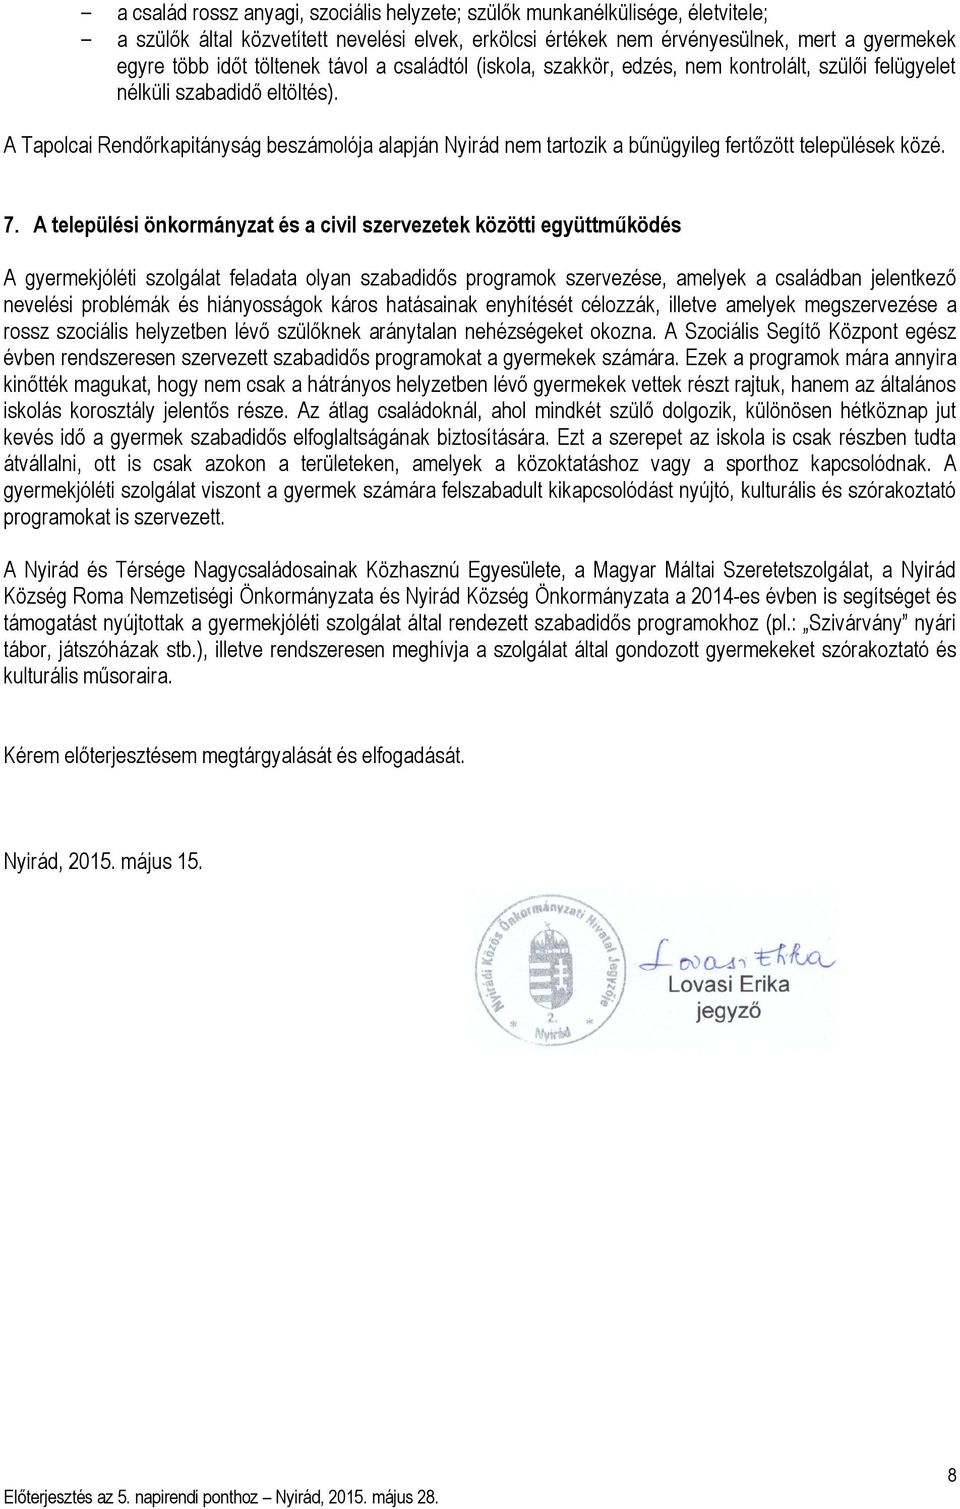 A Tapolcai Rendőrkapitányság beszámolója alapján Nyirád nem tartozik a bűnügyileg fertőzött települések közé. 7.